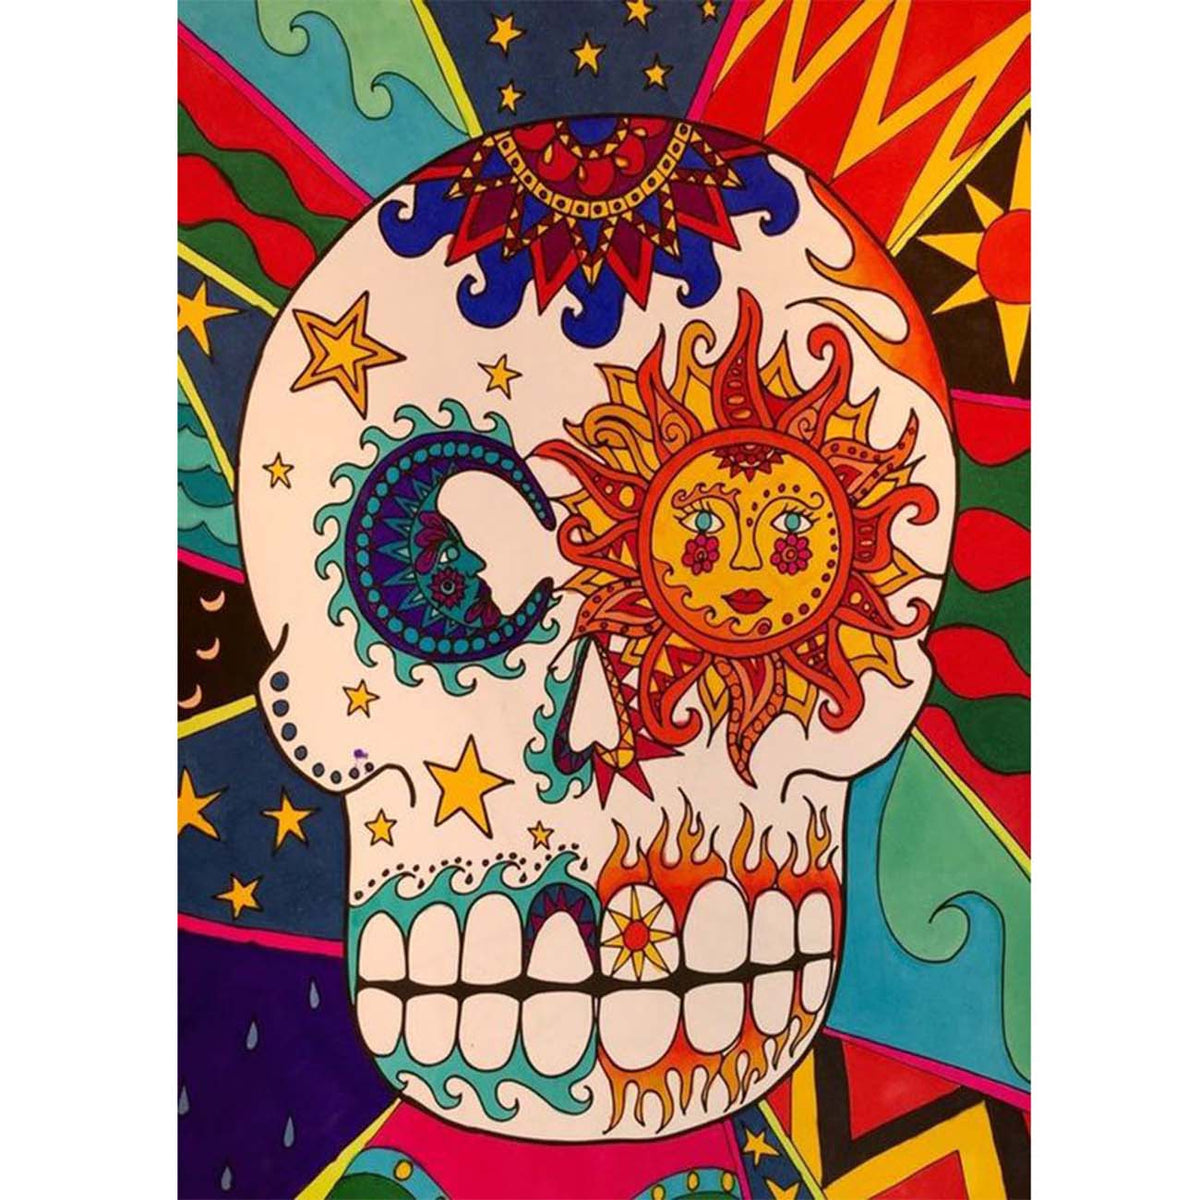  Adult Diamond Art Painting Kit - Colorful Flower Skull